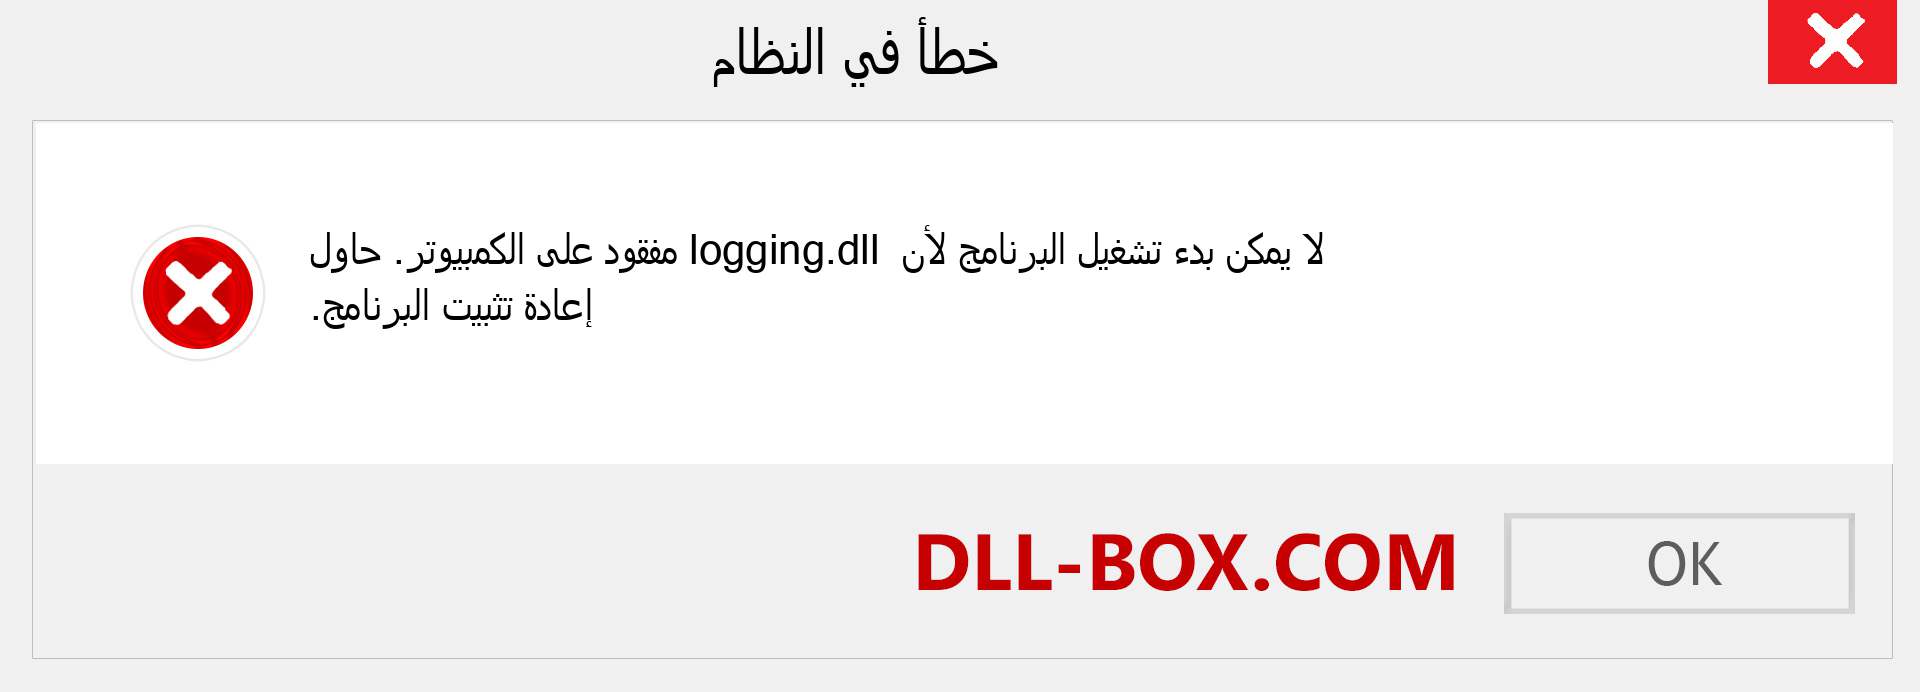 ملف logging.dll مفقود ؟. التنزيل لنظام التشغيل Windows 7 و 8 و 10 - إصلاح خطأ logging dll المفقود على Windows والصور والصور